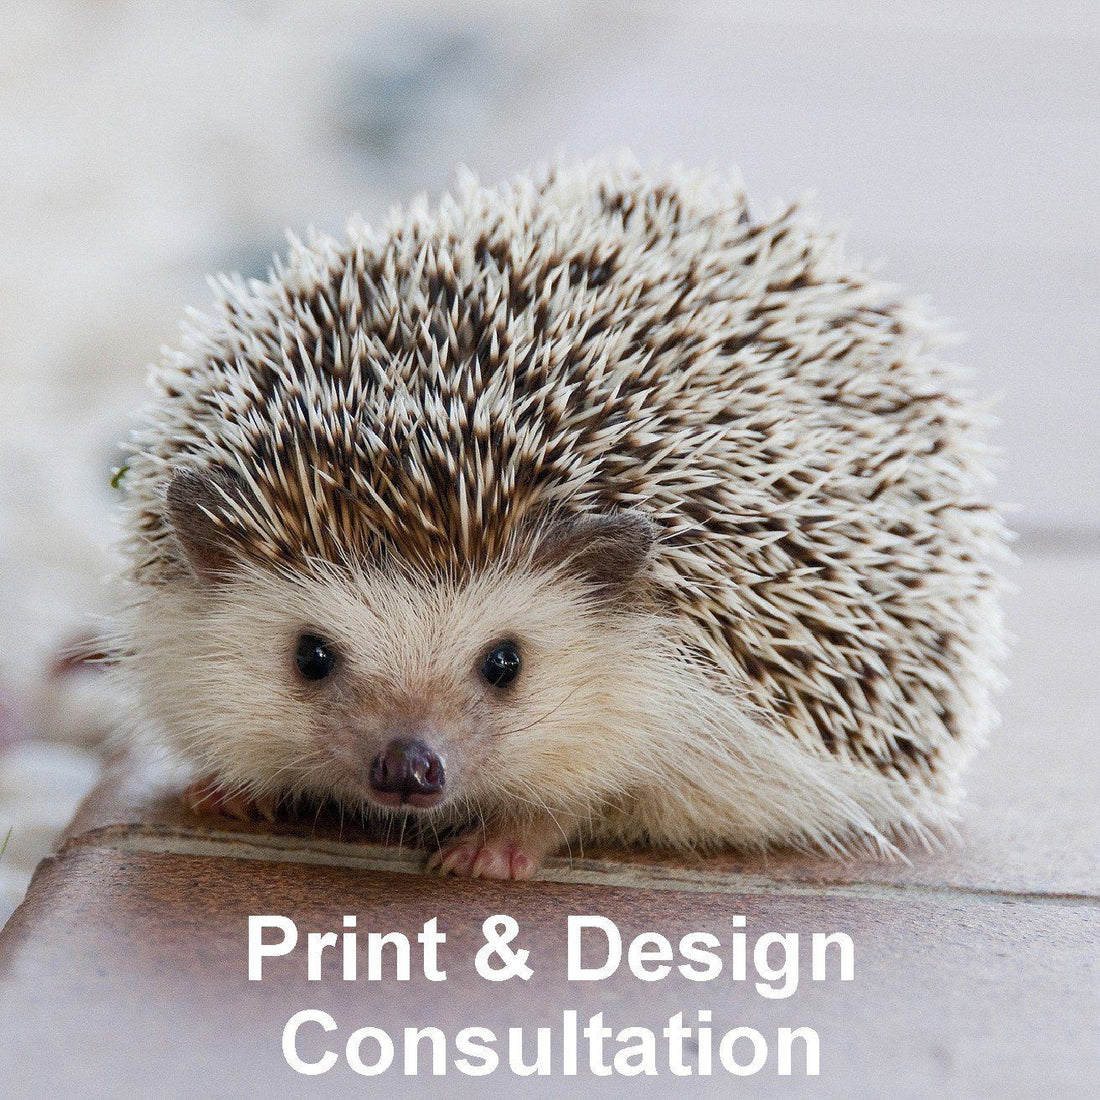 Print & Design Consultation